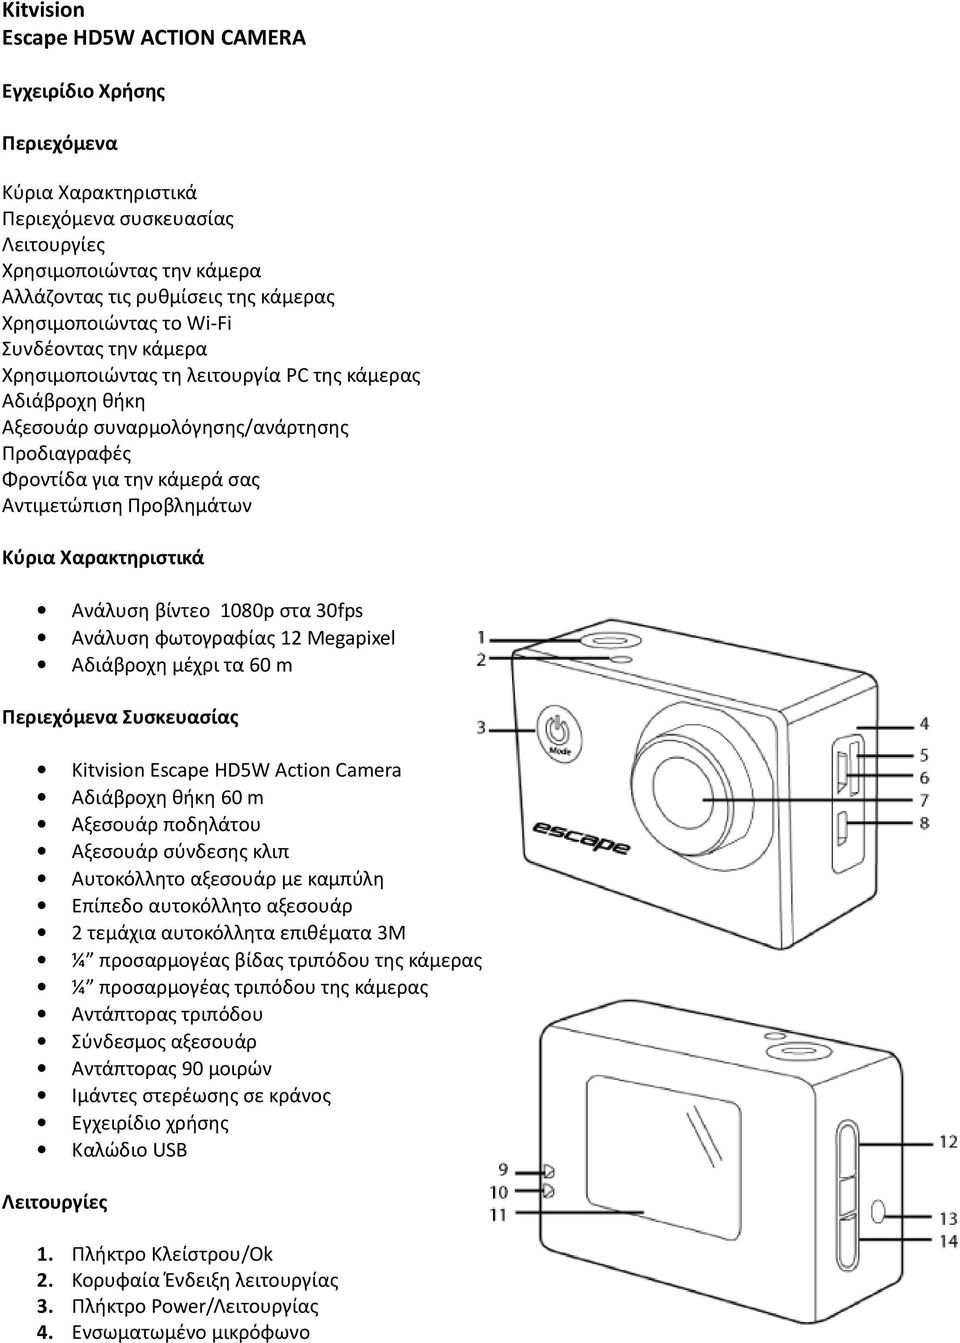 Προβλημάτων Κύρια Χαρακτηριστικά Ανάλυση βίντεο 1080p στα 30fps Ανάλυση φωτογραφίας 12 Megapixel Αδιάβροχη μέχρι τα 60 m Περιεχόμενα Συσκευασίας Kitvision Escape HD5W Action Camera Αδιάβροχη θήκη 60